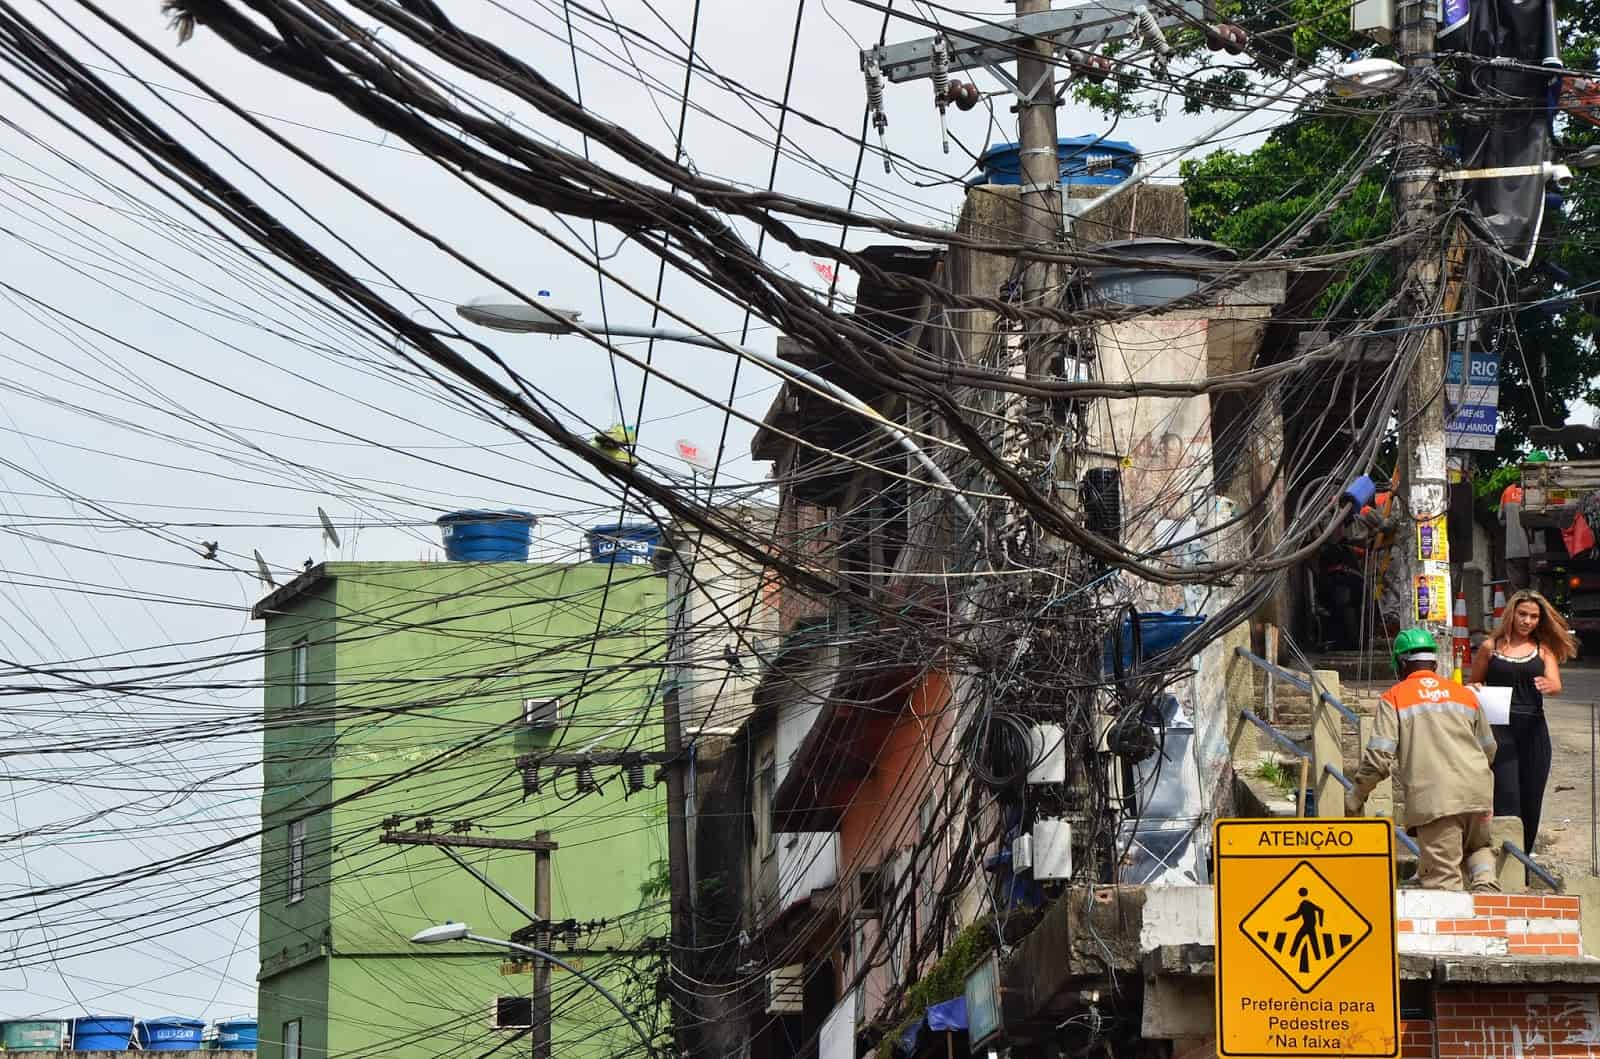 Powerlines at Rocinha favela, Rio de Janeiro, Brazil